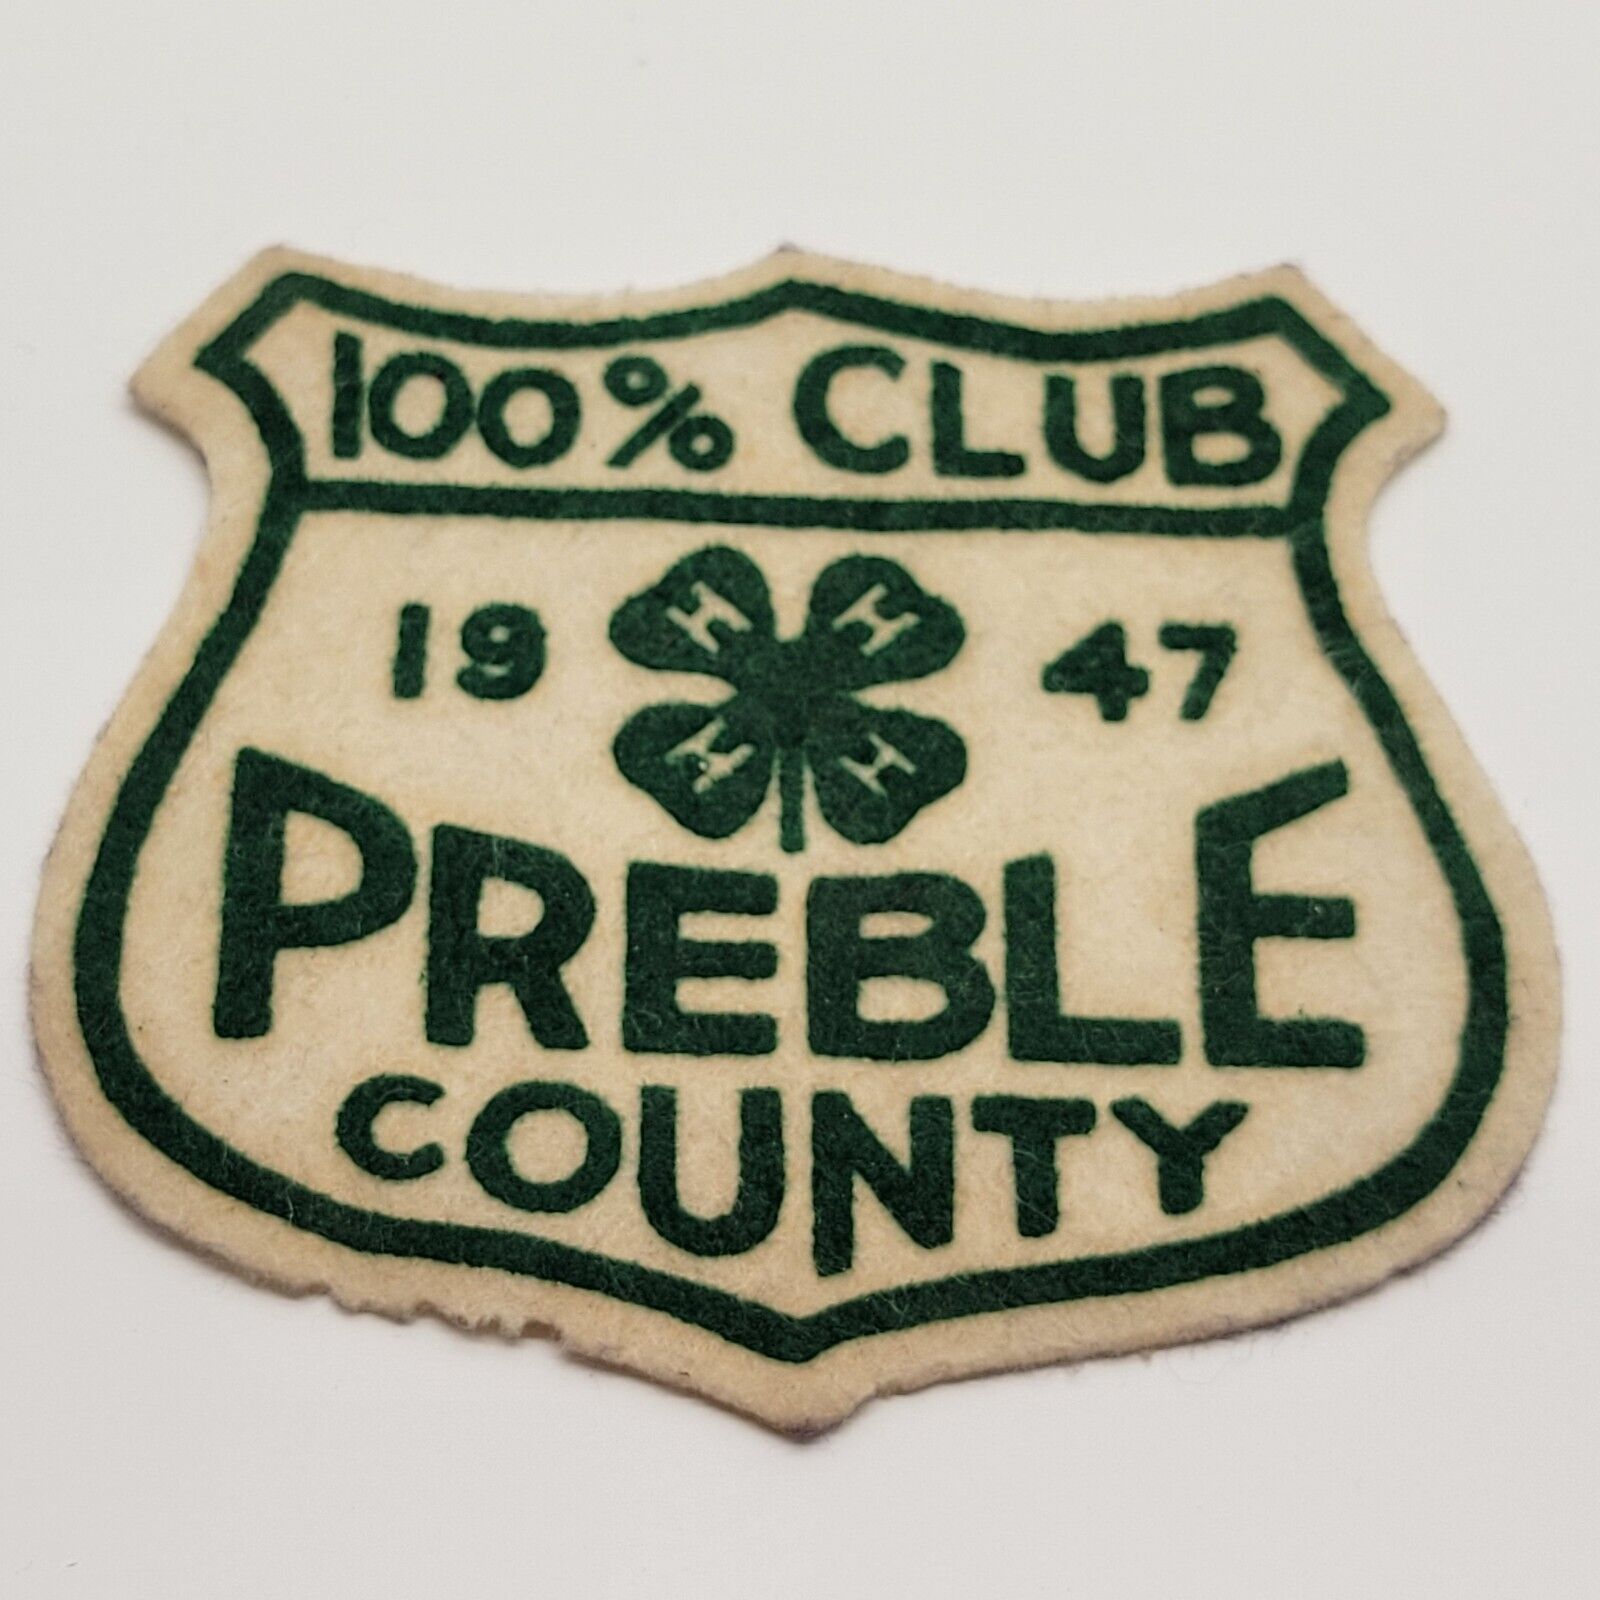 VTG 1947 Preble County Ohio 4H 100% Club Felt Patch USA Made Fair AG HHHH